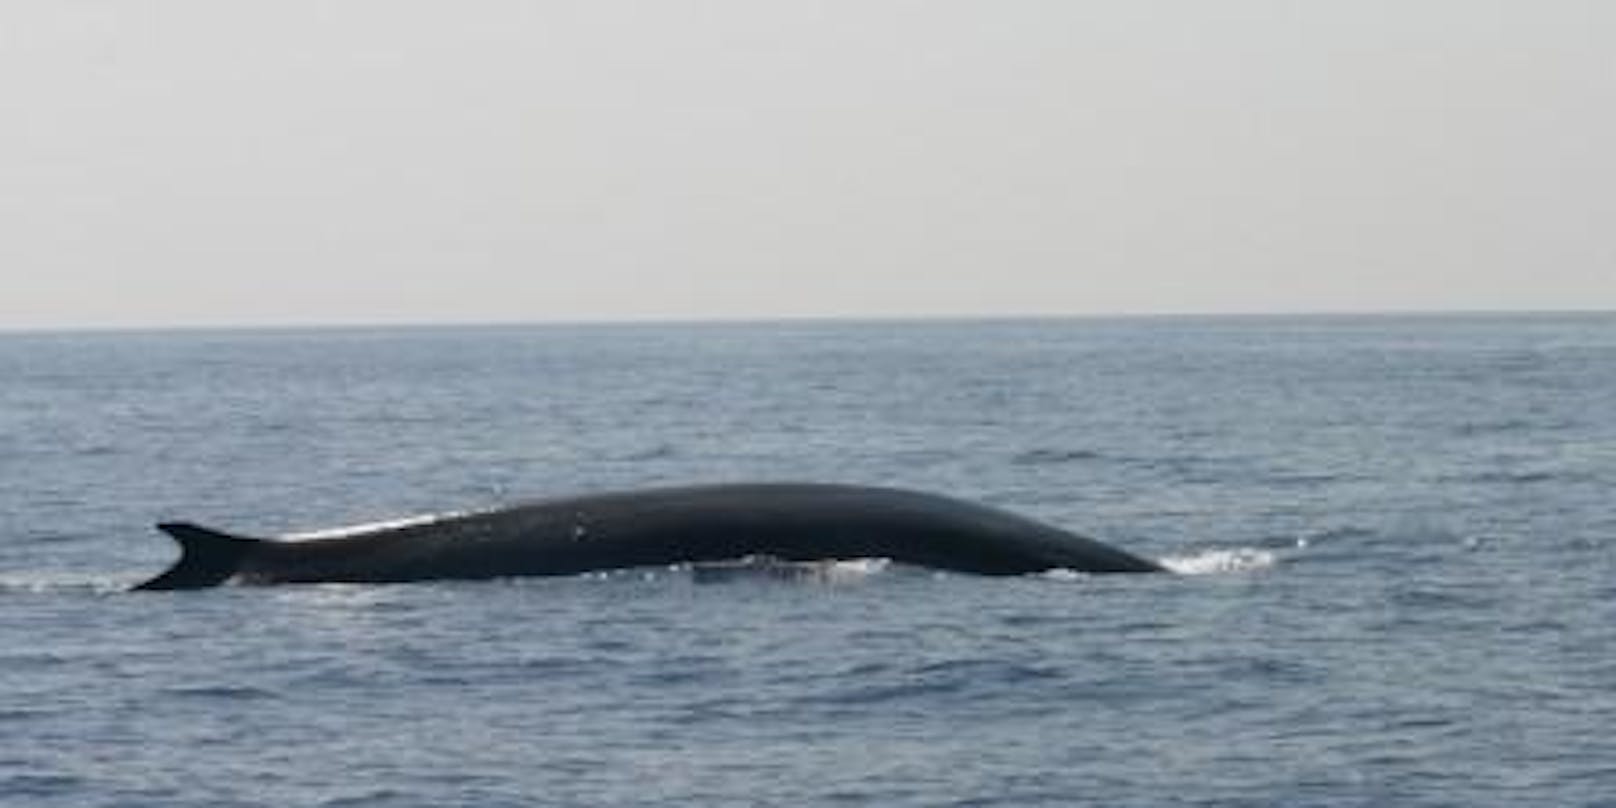 Bei dem "beschossenen" Wal handelt es sich um denselben Wal, den das Blue World Institute vor ein paar Wochen gesucht hatte. <a href="https://www.heute.at/s/und-schon-wieder-15-meter-wal-in-adria-100097812">Mehr dazu hier &gt;&gt;</a>